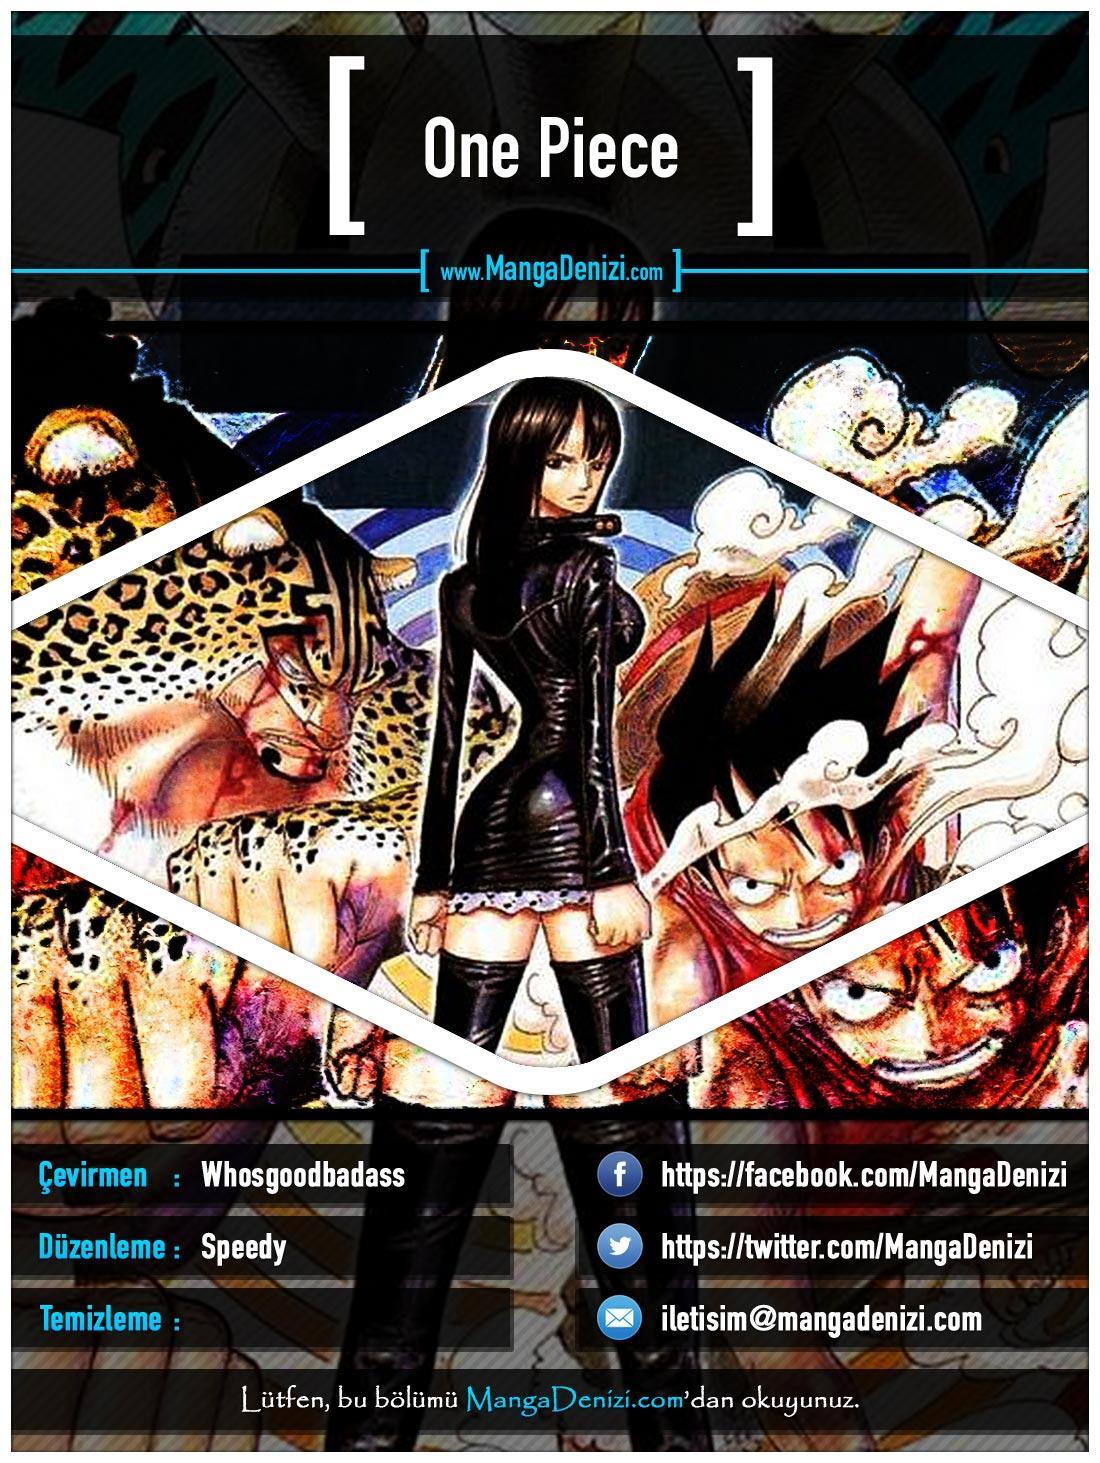 One Piece [Renkli] mangasının 0345 bölümünün 1. sayfasını okuyorsunuz.